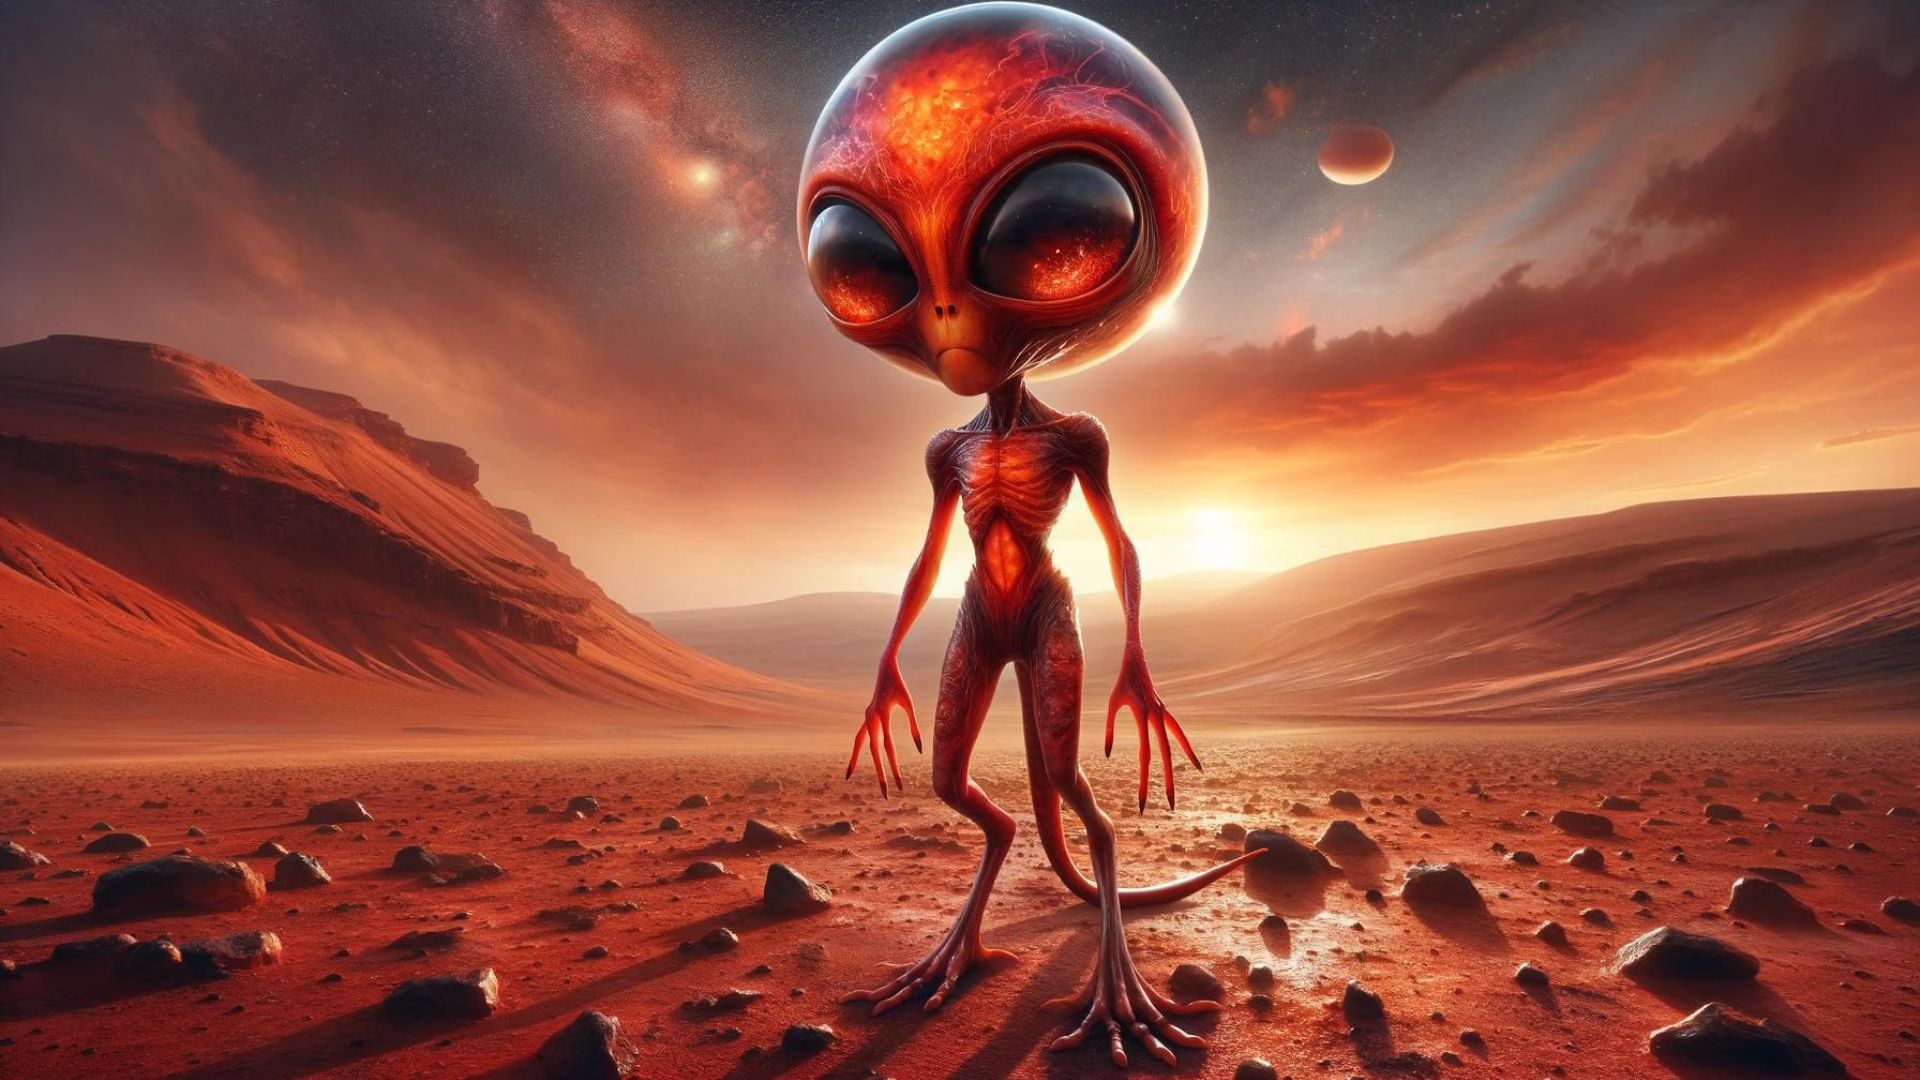 An Alien from Mars by Phoenix